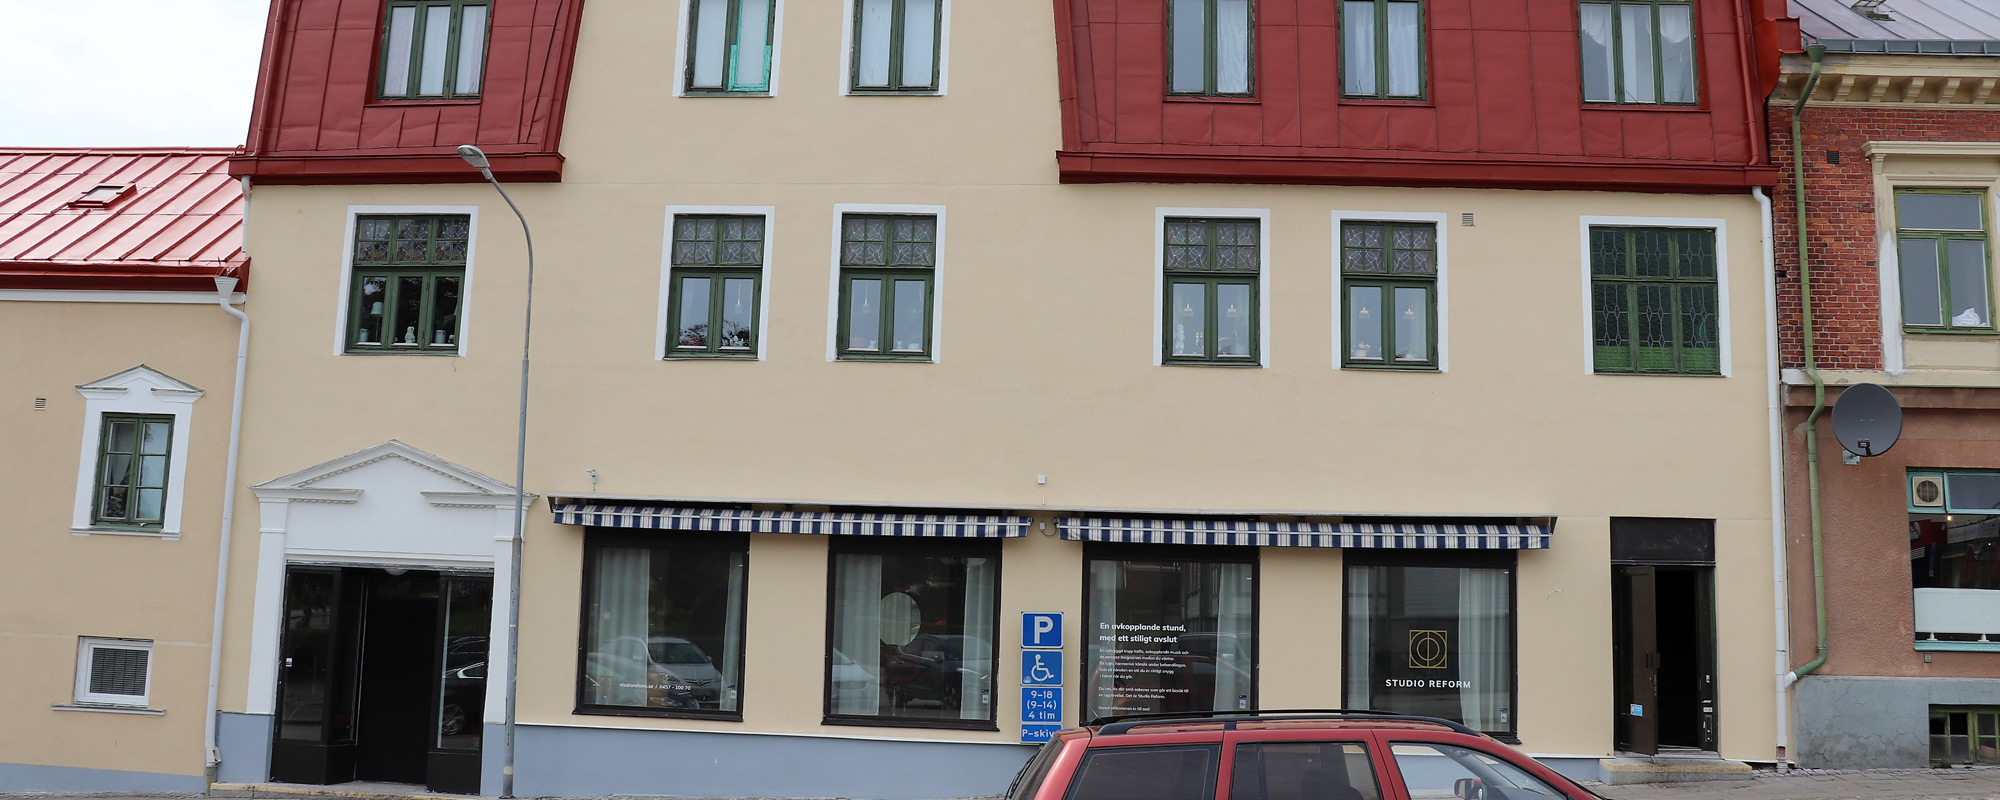 Välkommen till <br />PM Fastigheter i Ronneby!